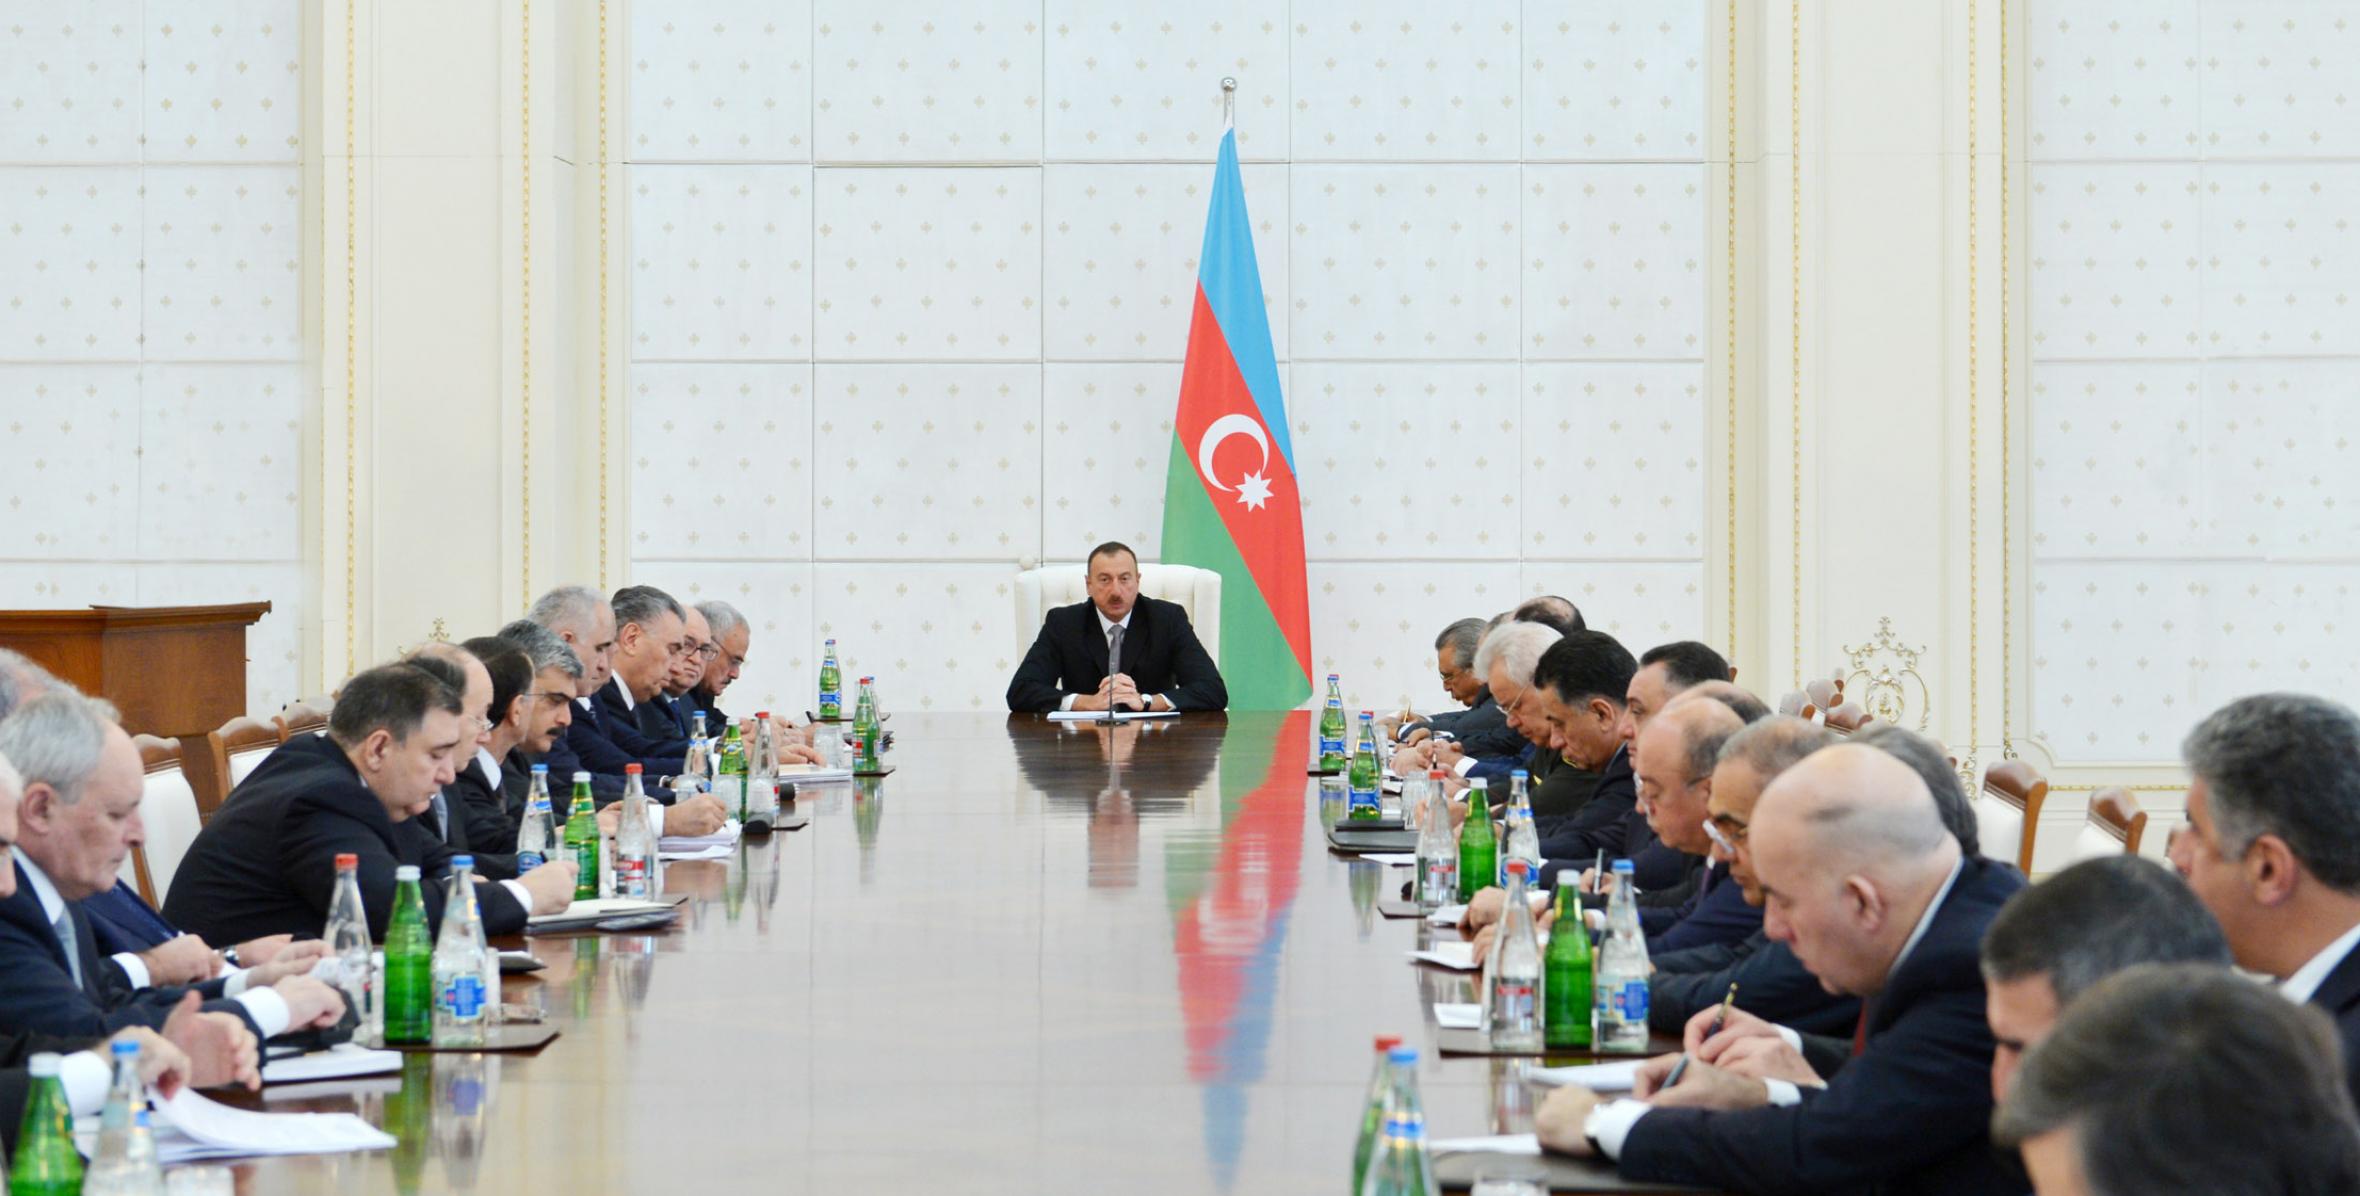 Под председательством Ильхама Алиева состоялось заседание Кабинета Министров, посвященное итогам социально-экономического развития в 2012 году и задачам, предстоящим в 2013 году